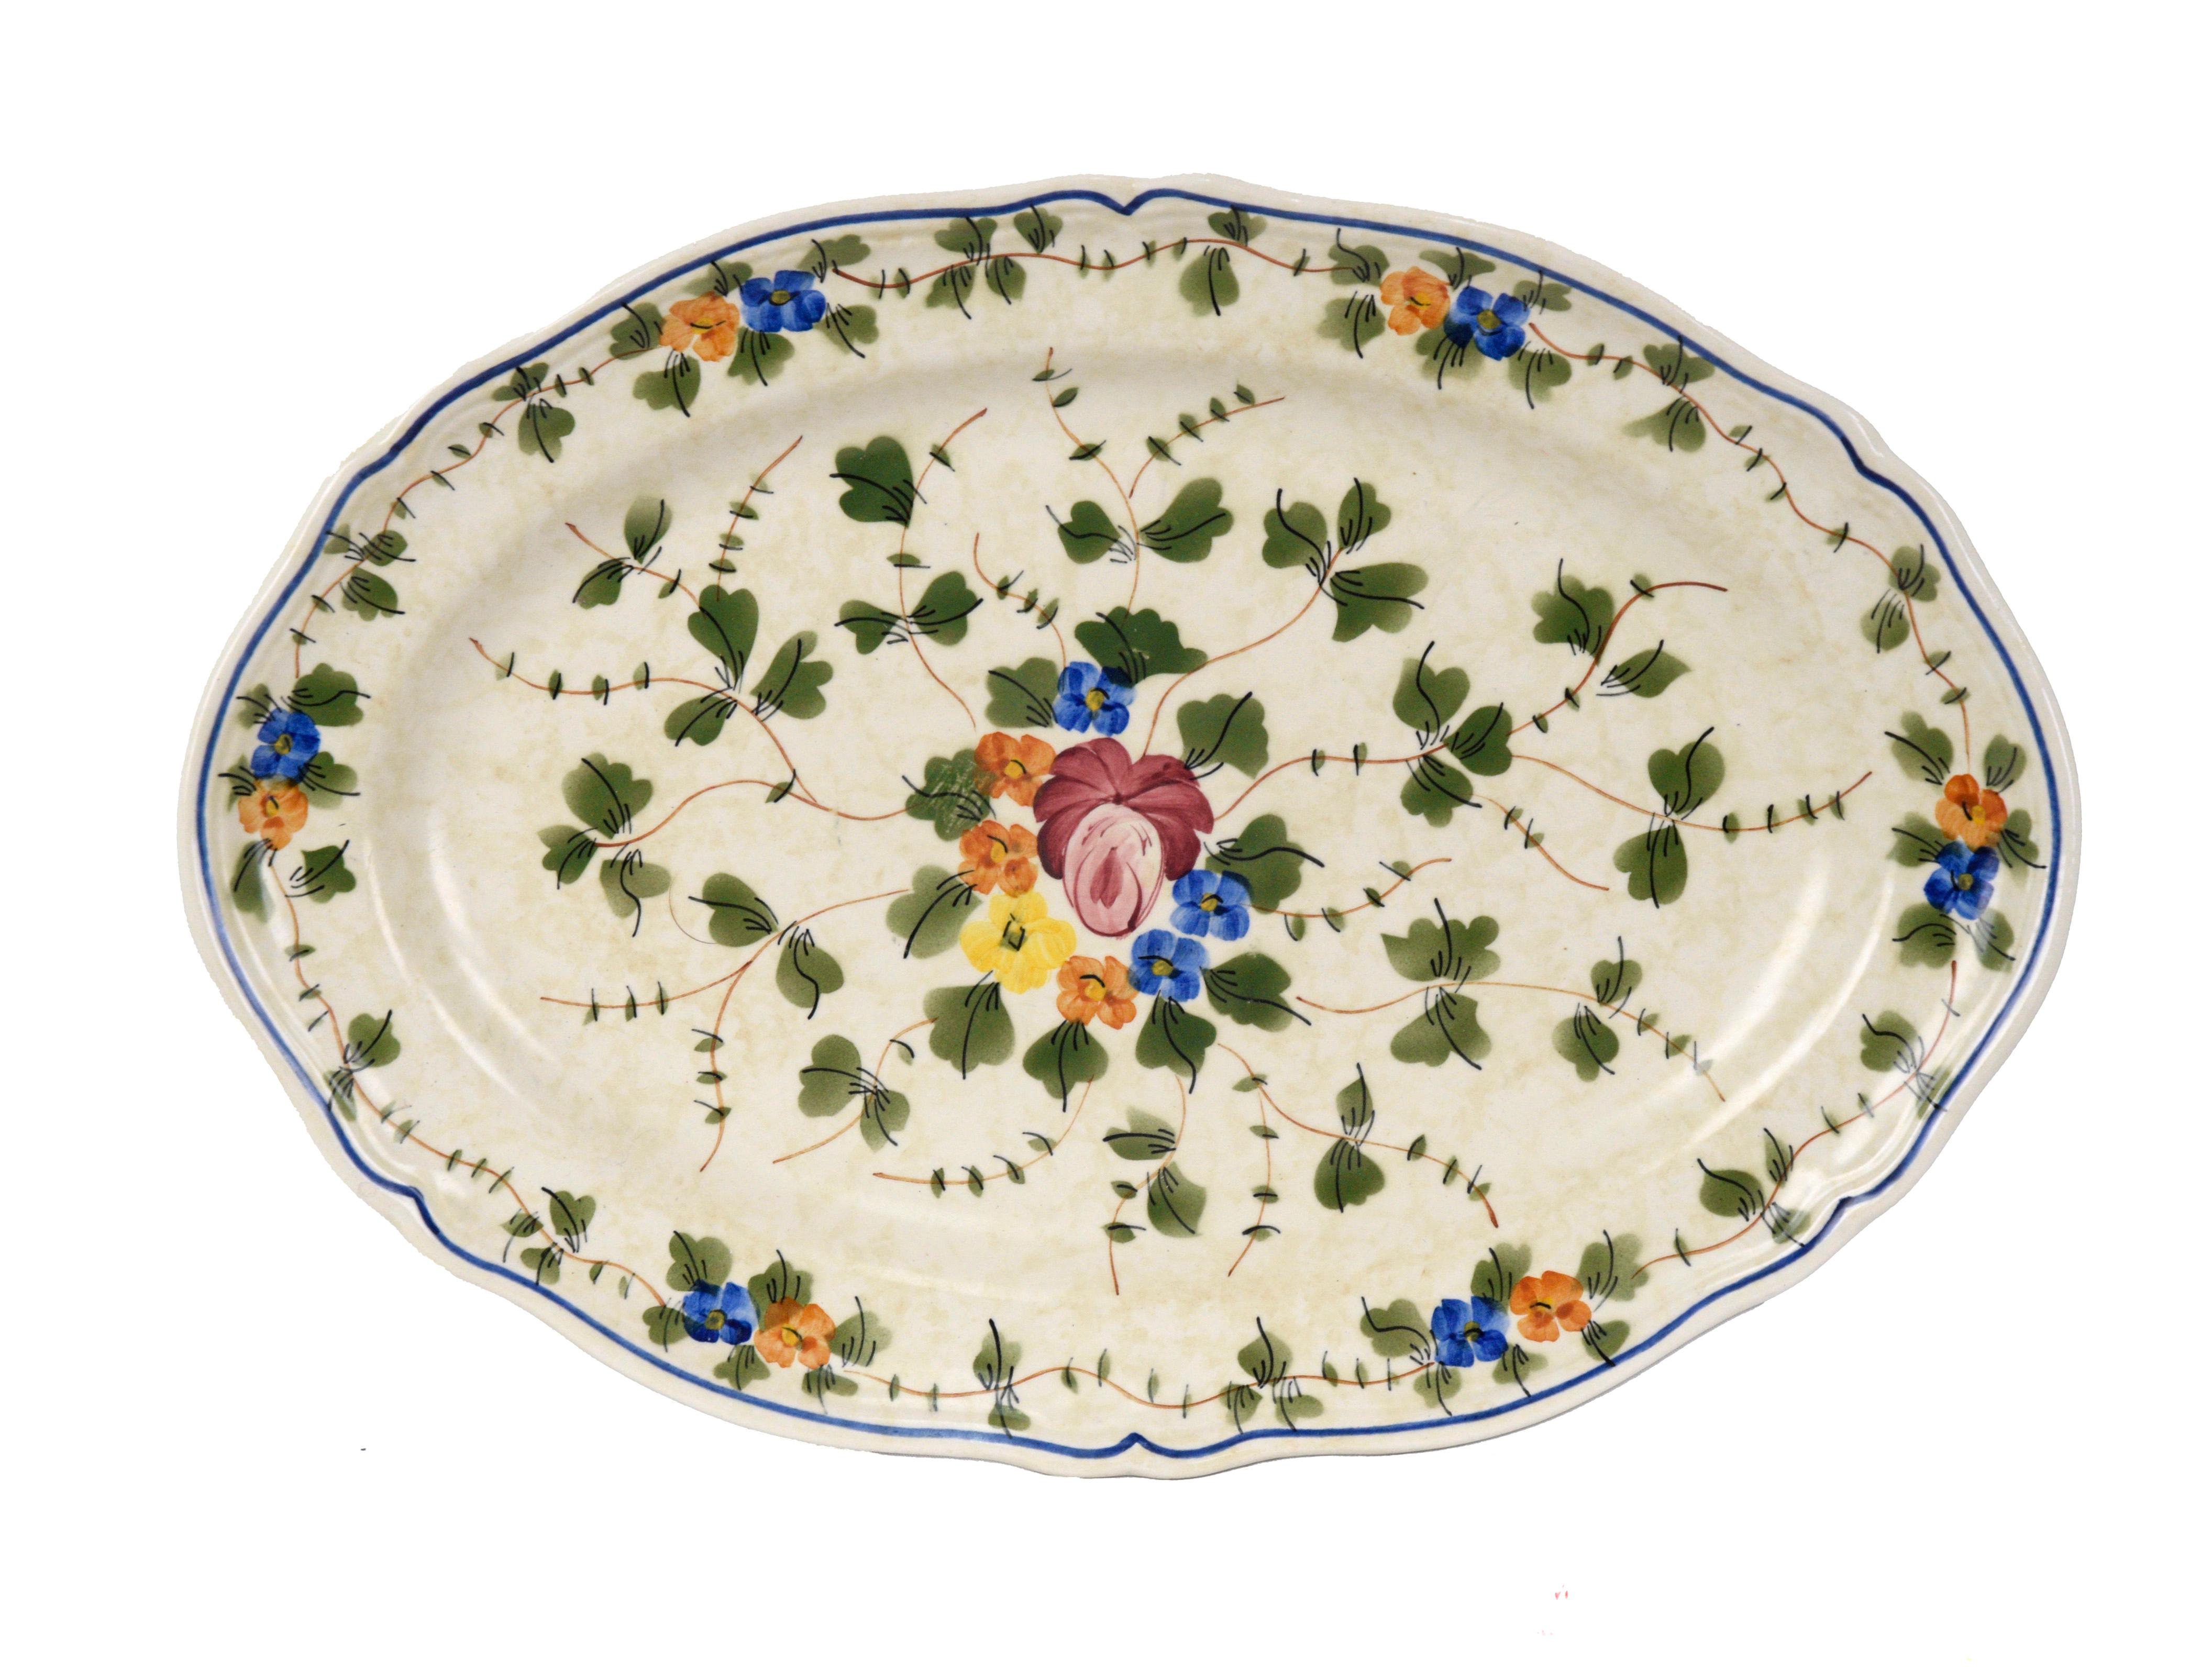 4-teiliges Longchamp-Tischset mit Serviertablett, 6er-Set Vintage, Frankreich

Dieses wunderschön handbemalte Geschirrset ist in gutem Zustand. Das florale Muster zeigt leuchtend bunte Violen, die von grünen Ranken umgeben sind.

Das Set enthält